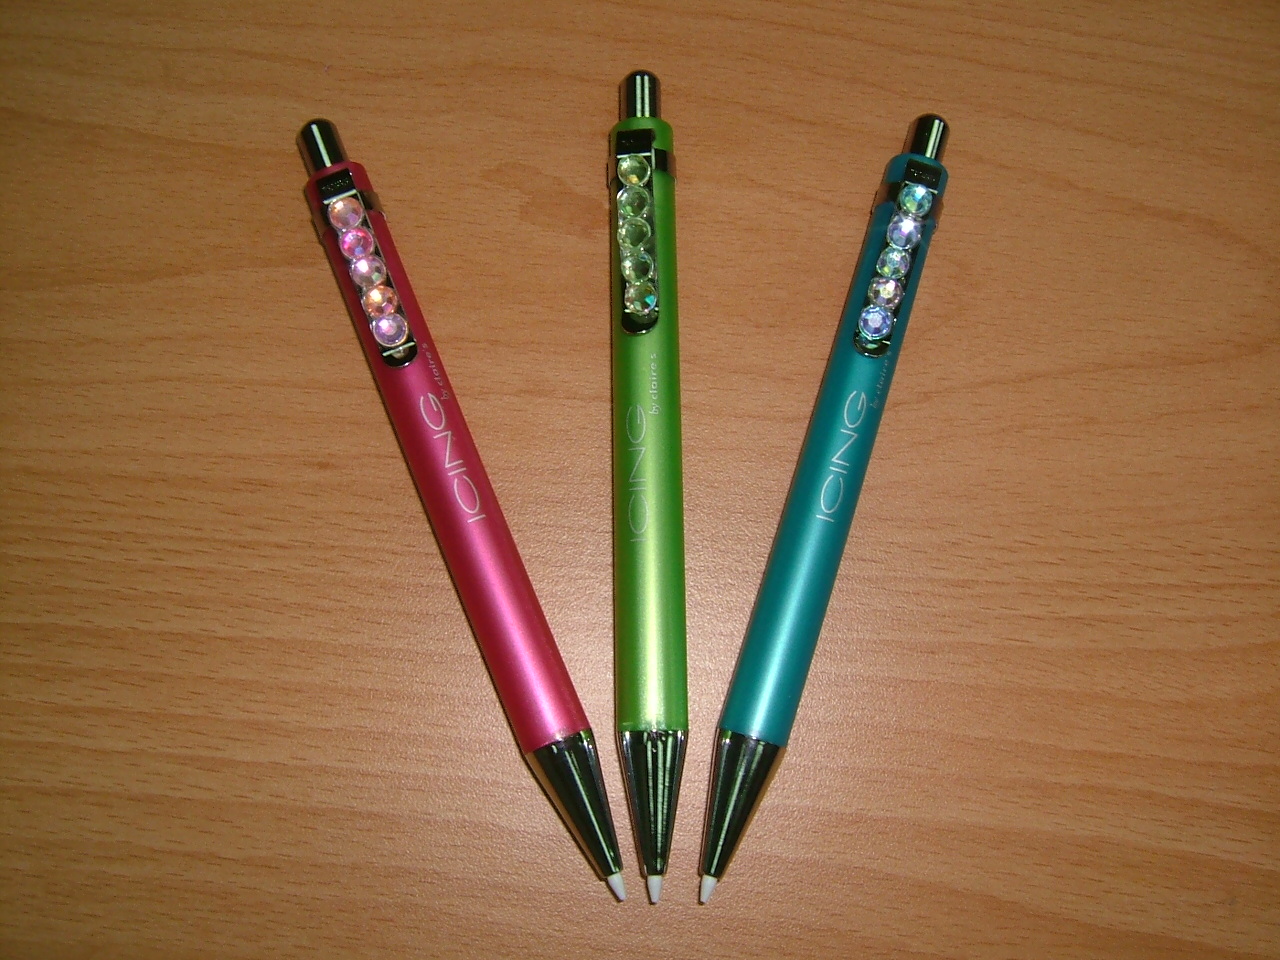 ball pen /gel pen /mechanical pencil (шариковая ручка / GEL ручка / Механический карандаш)